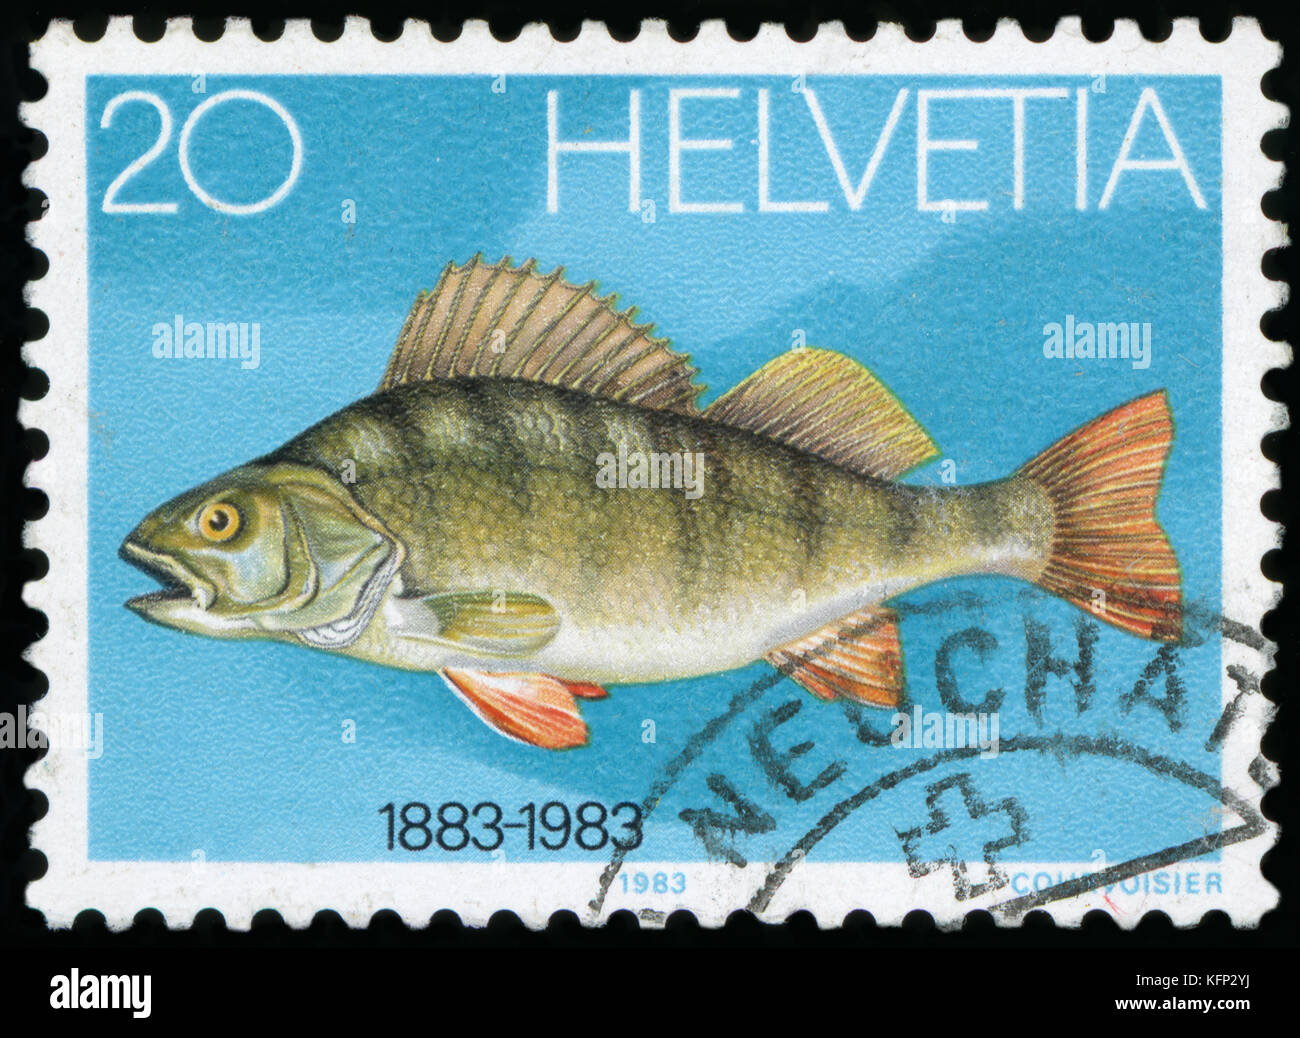 Postage stamp - Helvetia Postage stamp - Helvetia Stock Photo